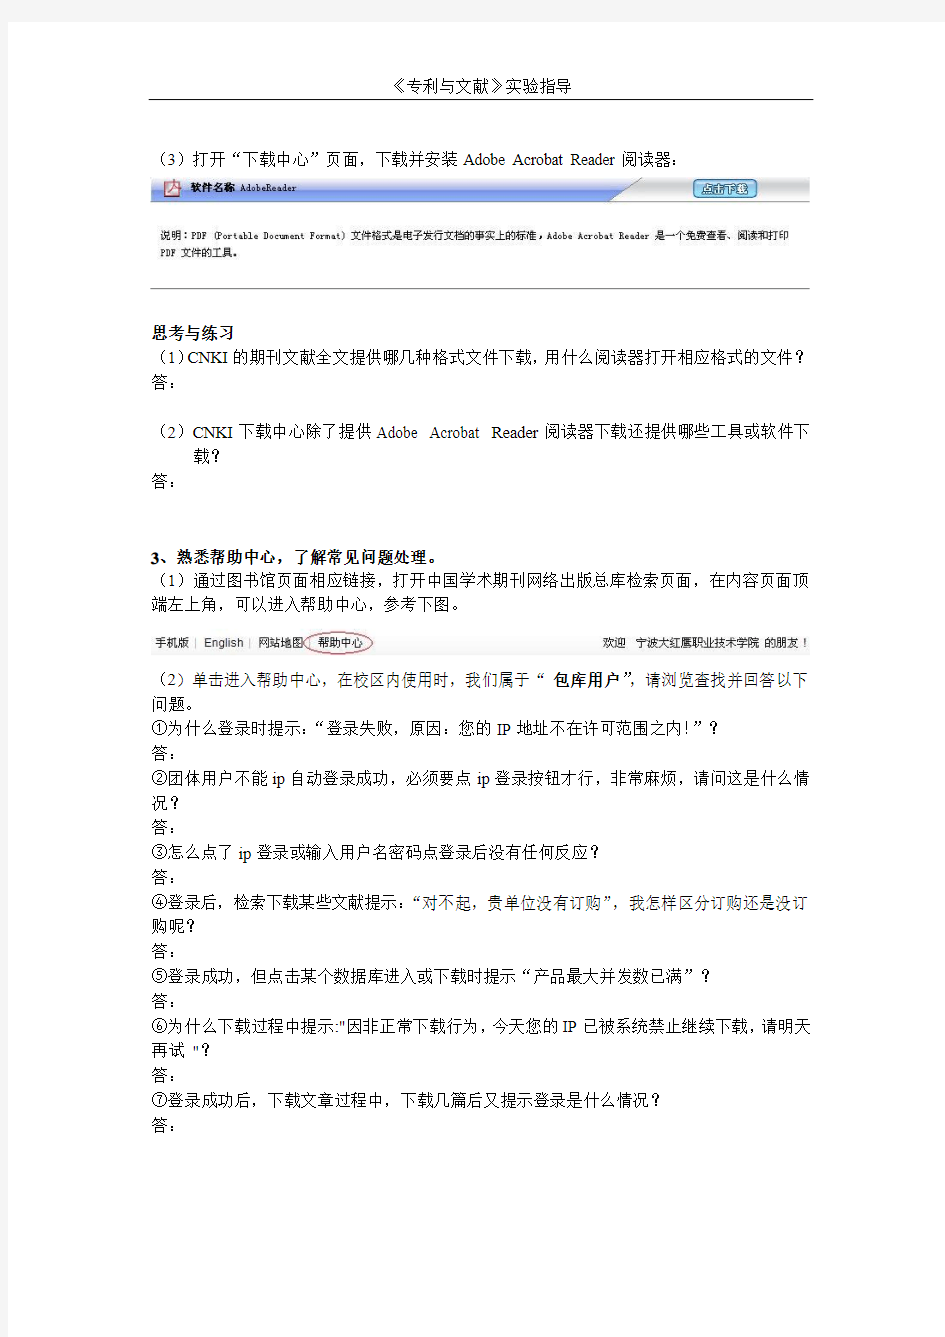 2-实验2 中文期刊检索上机实验指导书 (1)